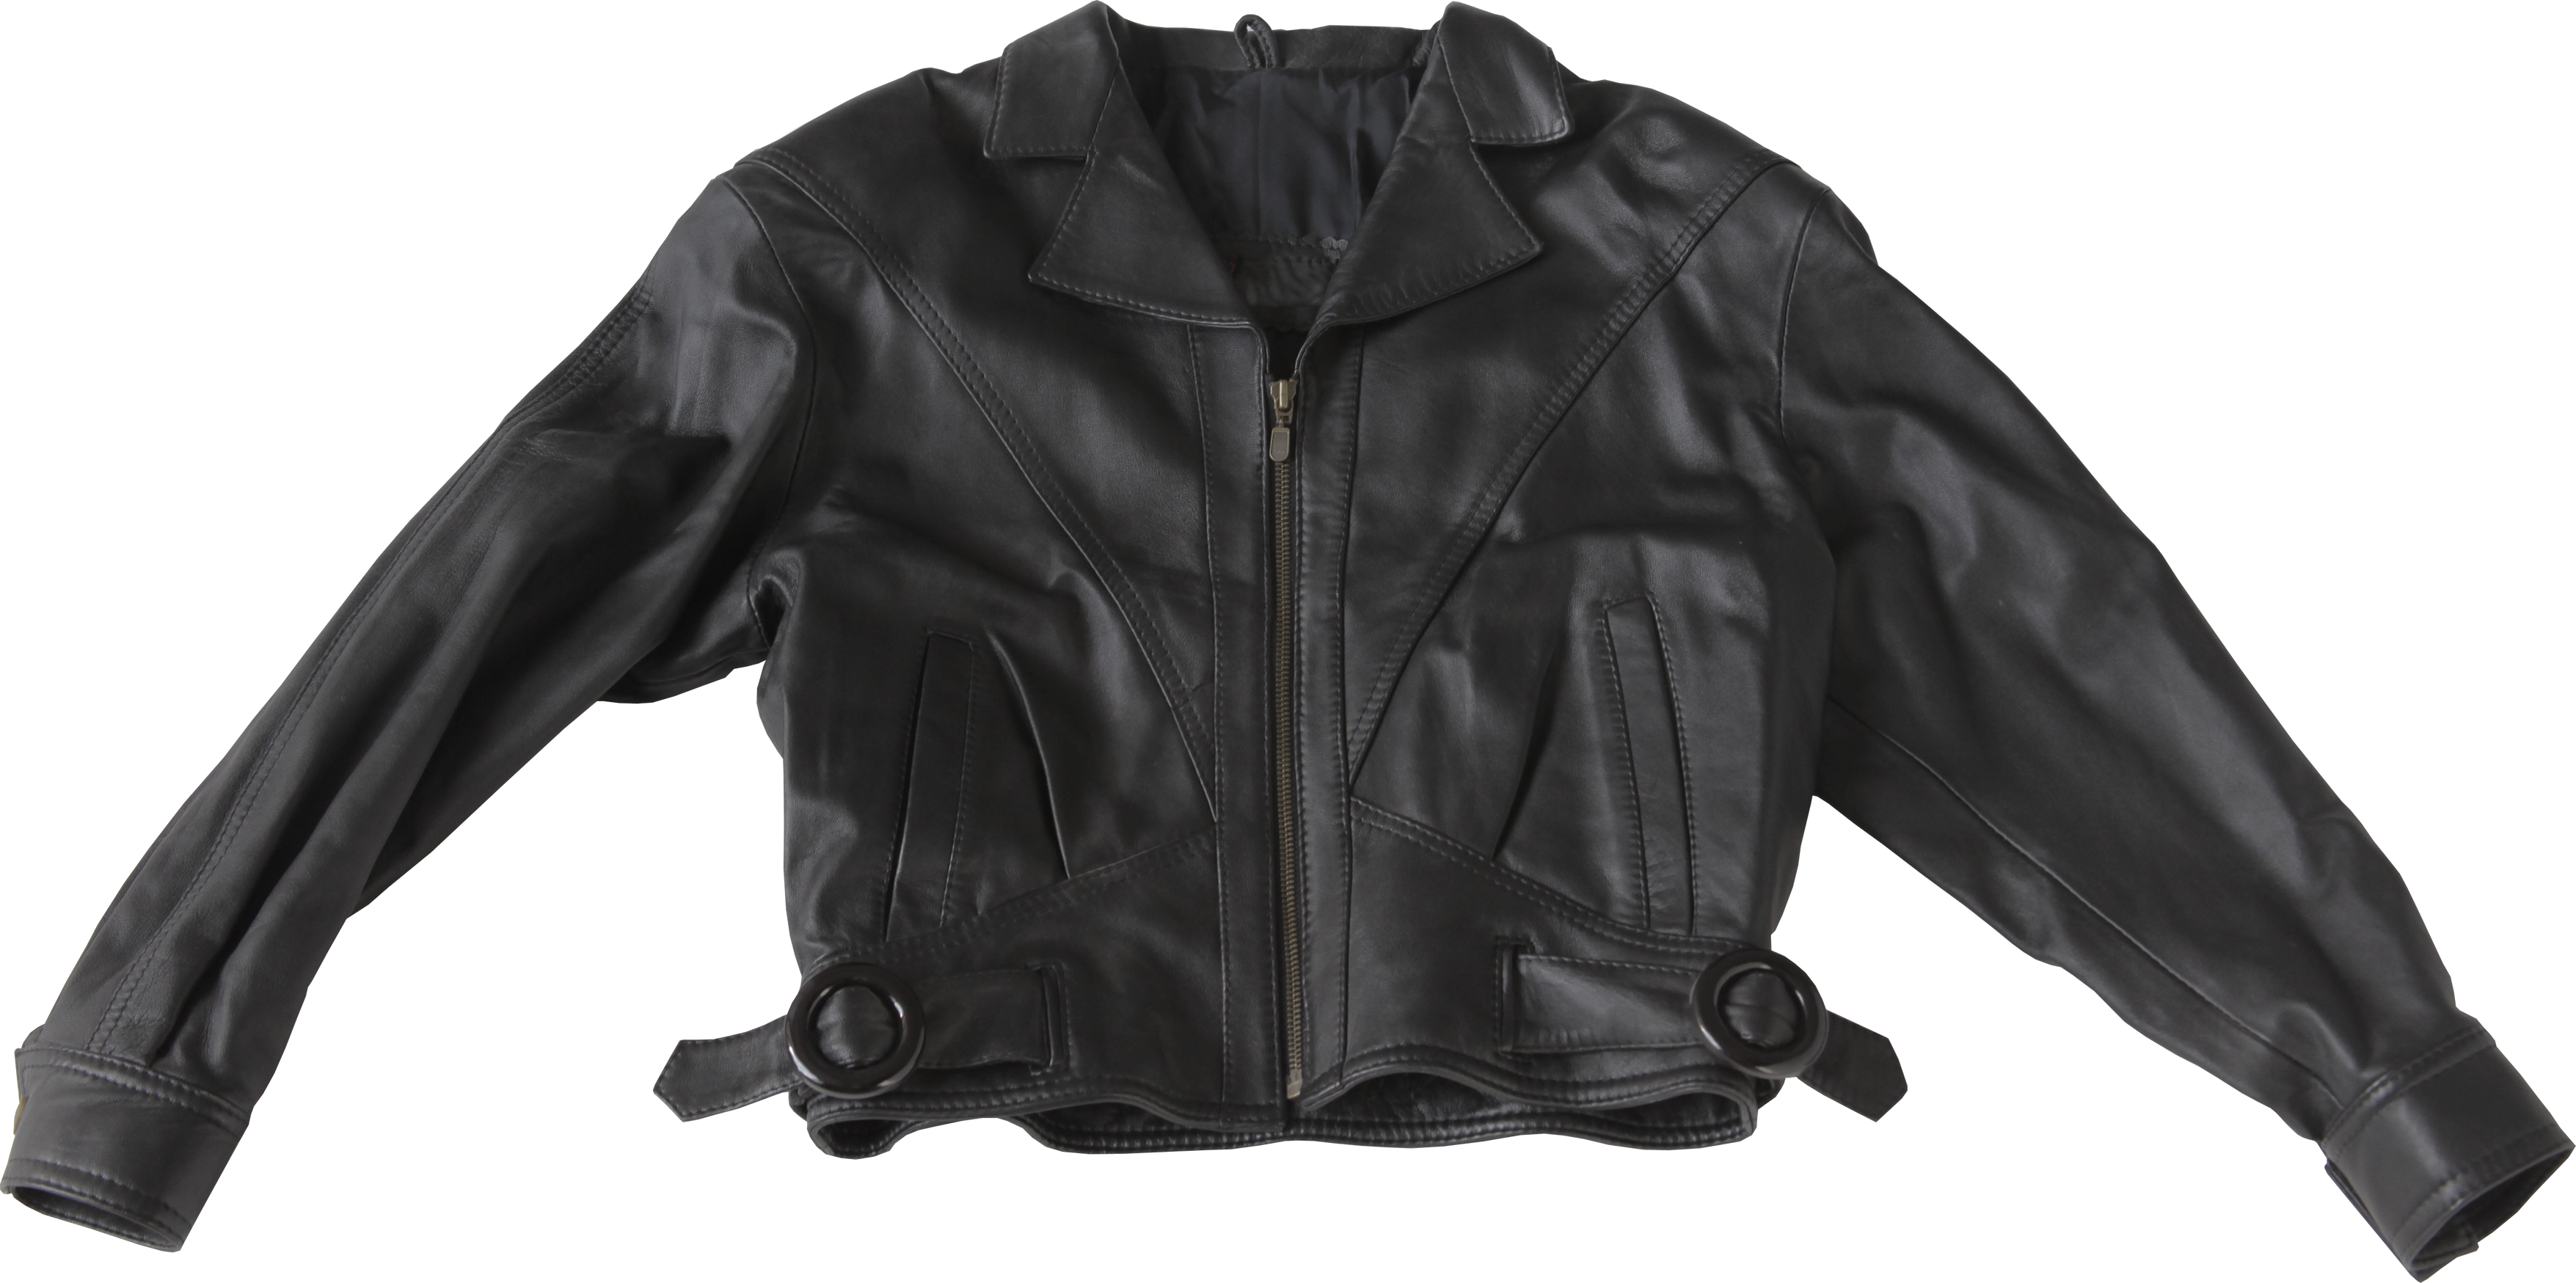 Black leather jacket PNG image